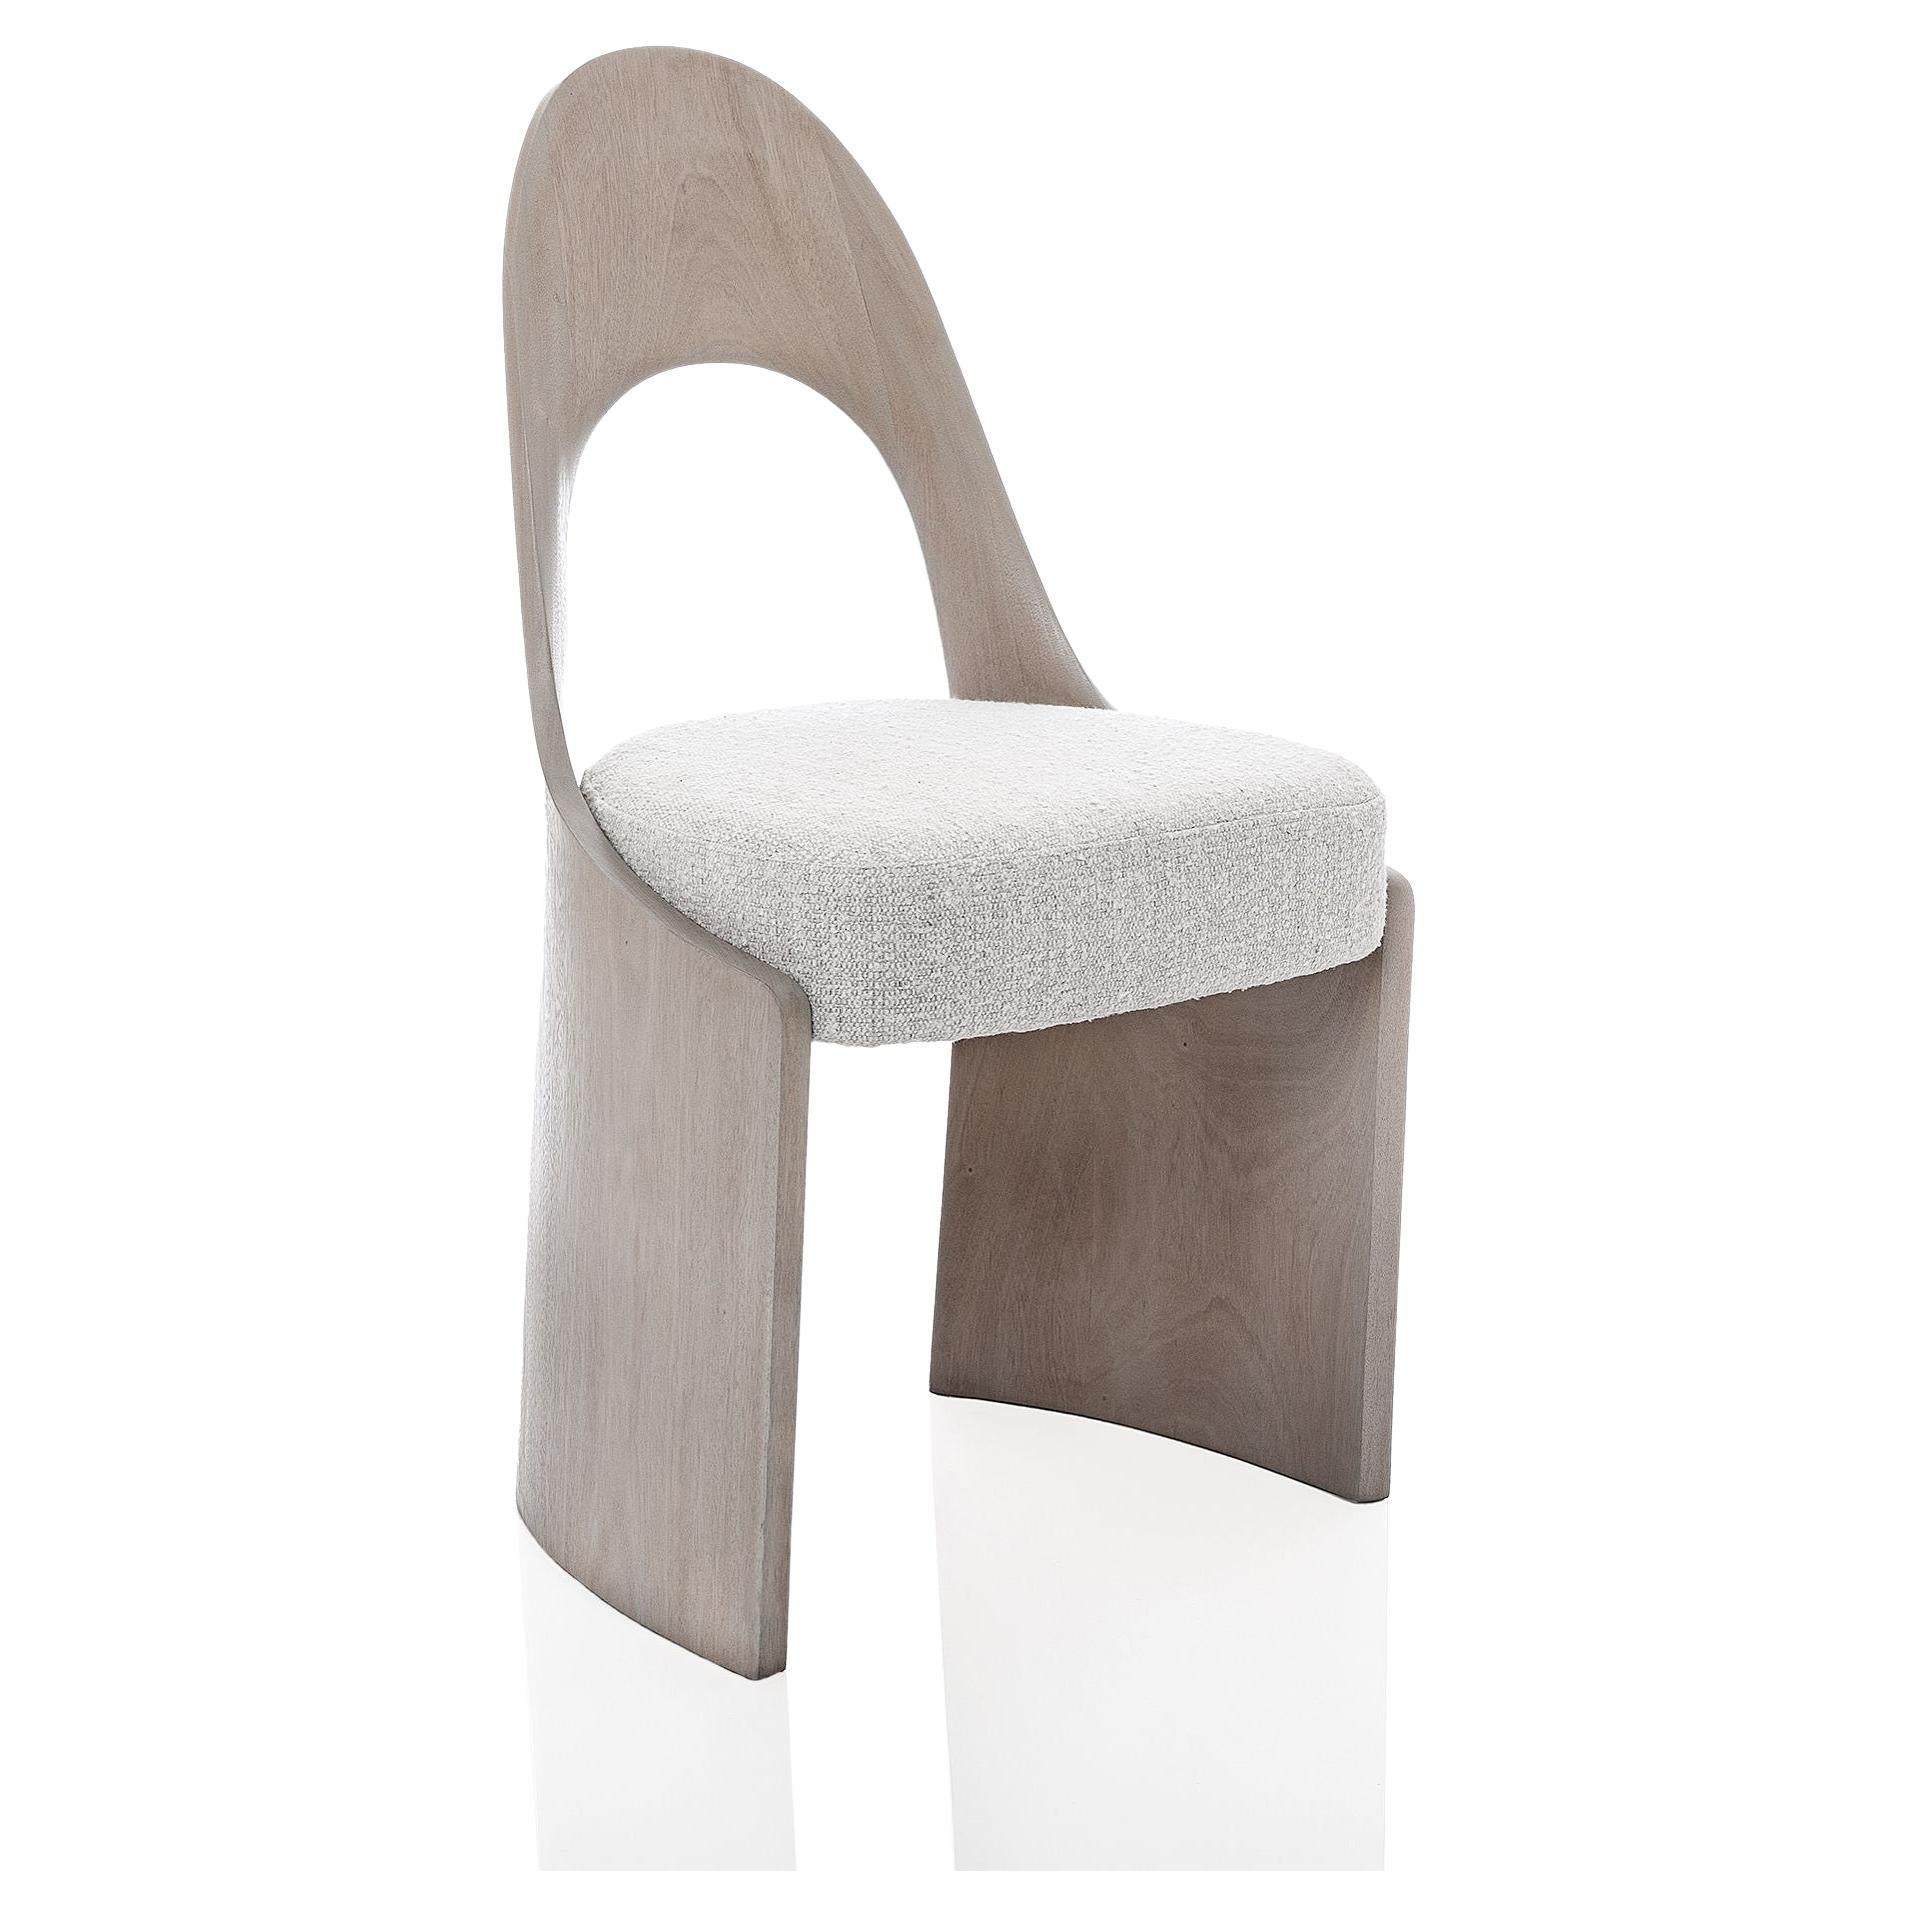 Studio Thomas Newman, "Gaia Chair", chaise à manger en vente